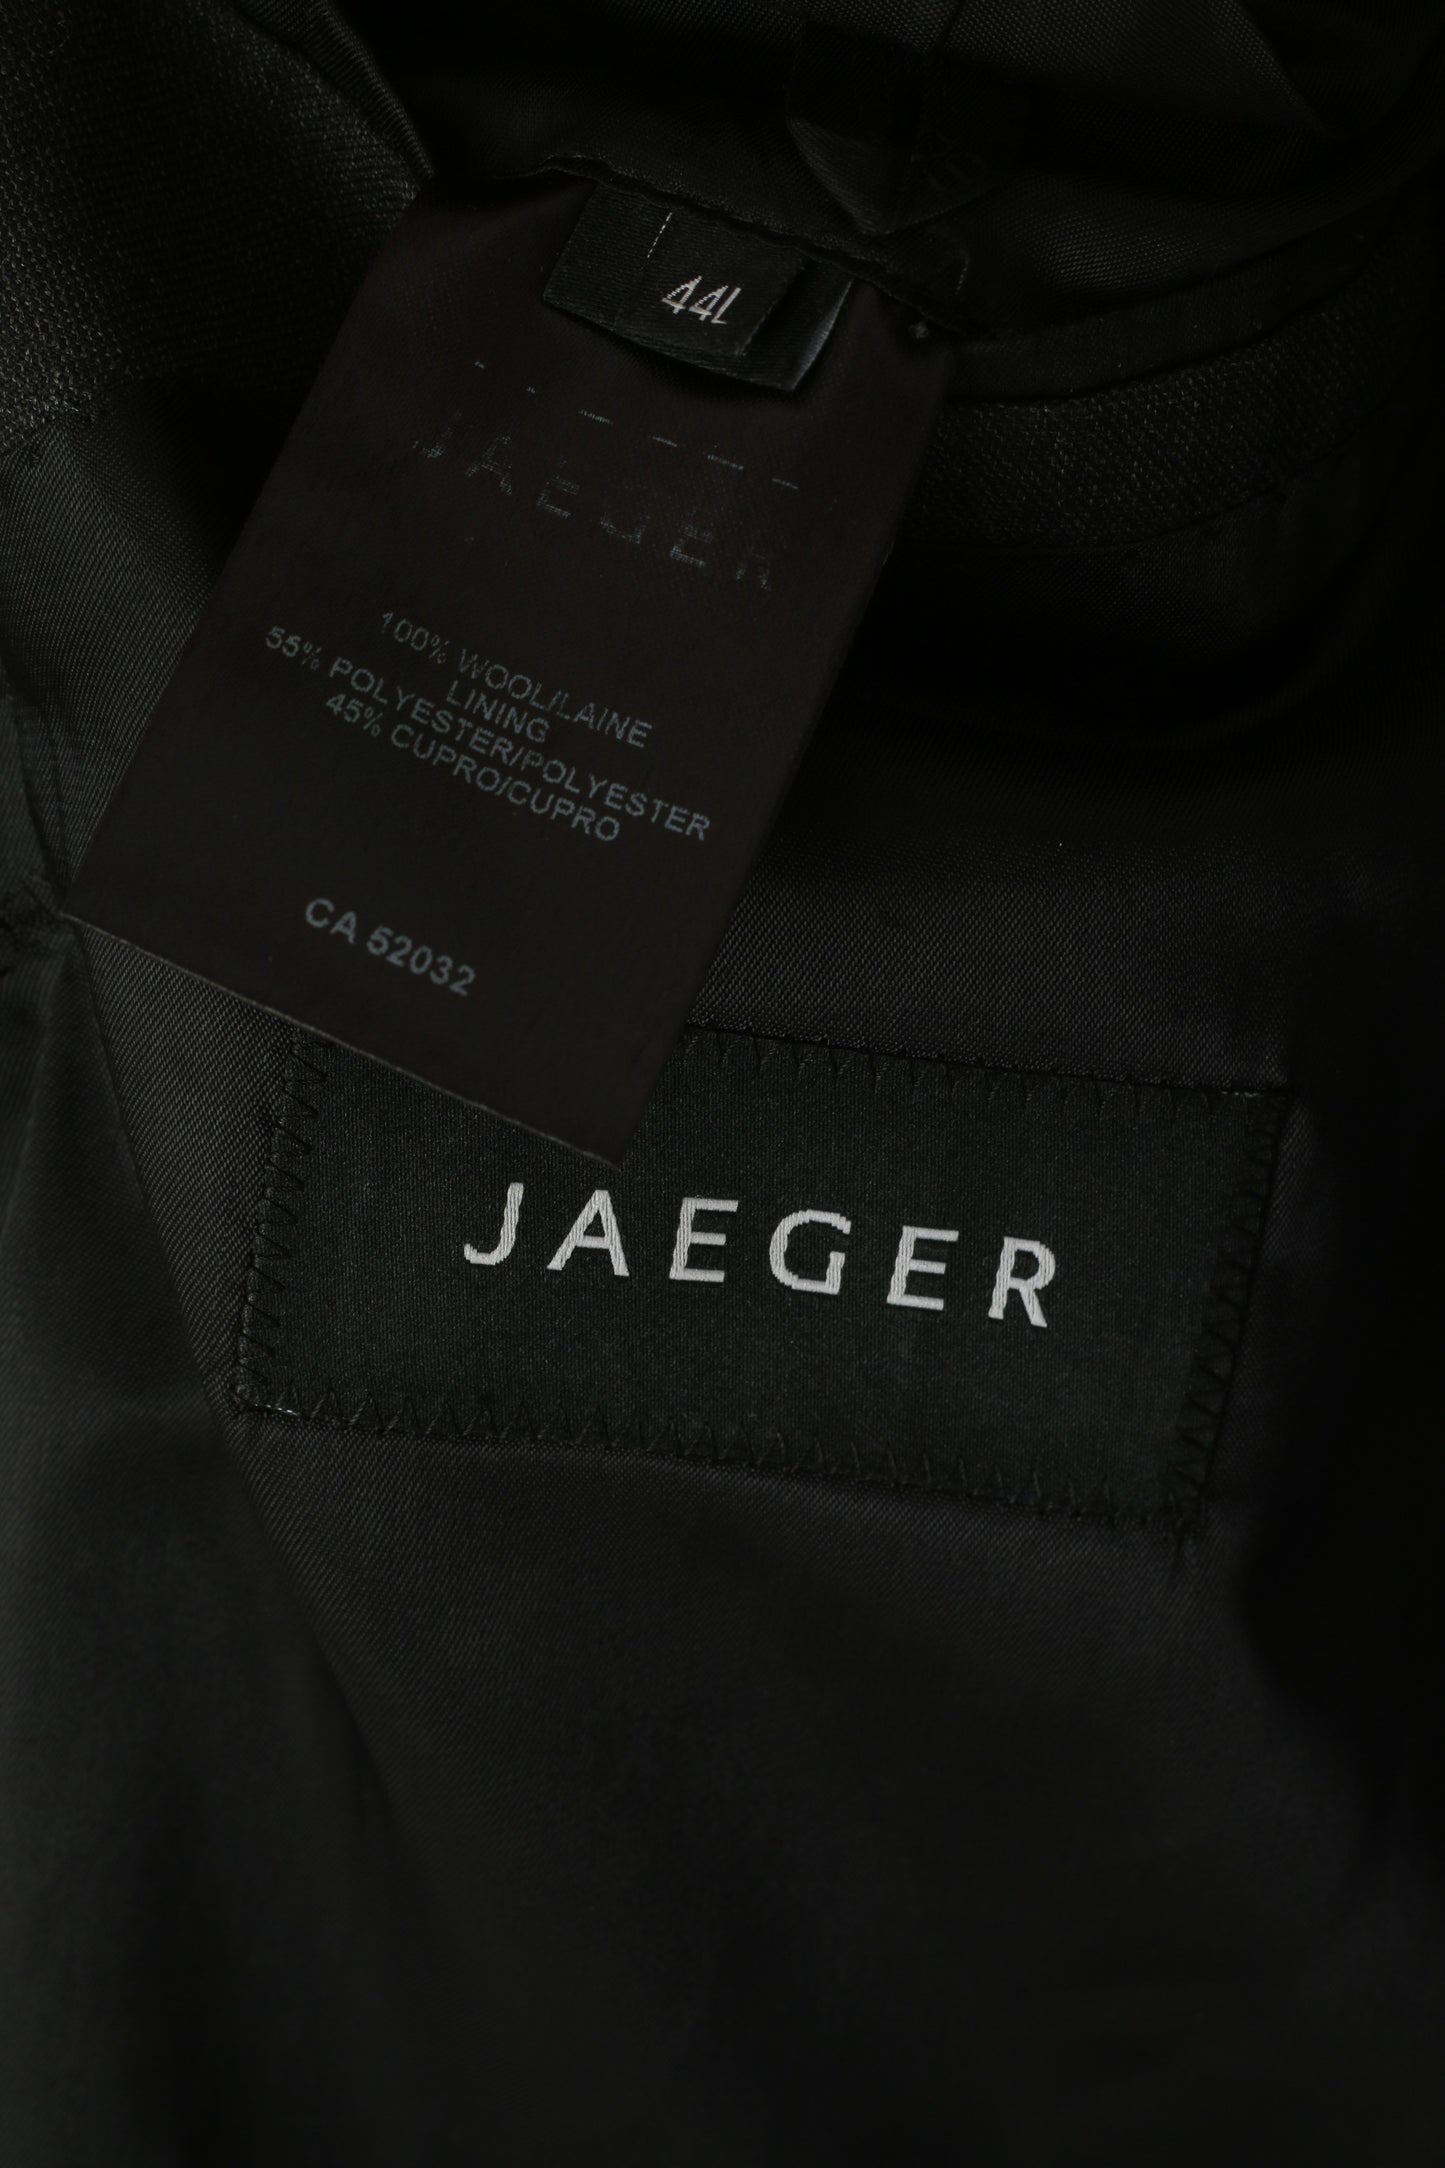 Jaeger Hommes 44 L Blazer Charbon 100% Laine Veste Simple Boutonnage